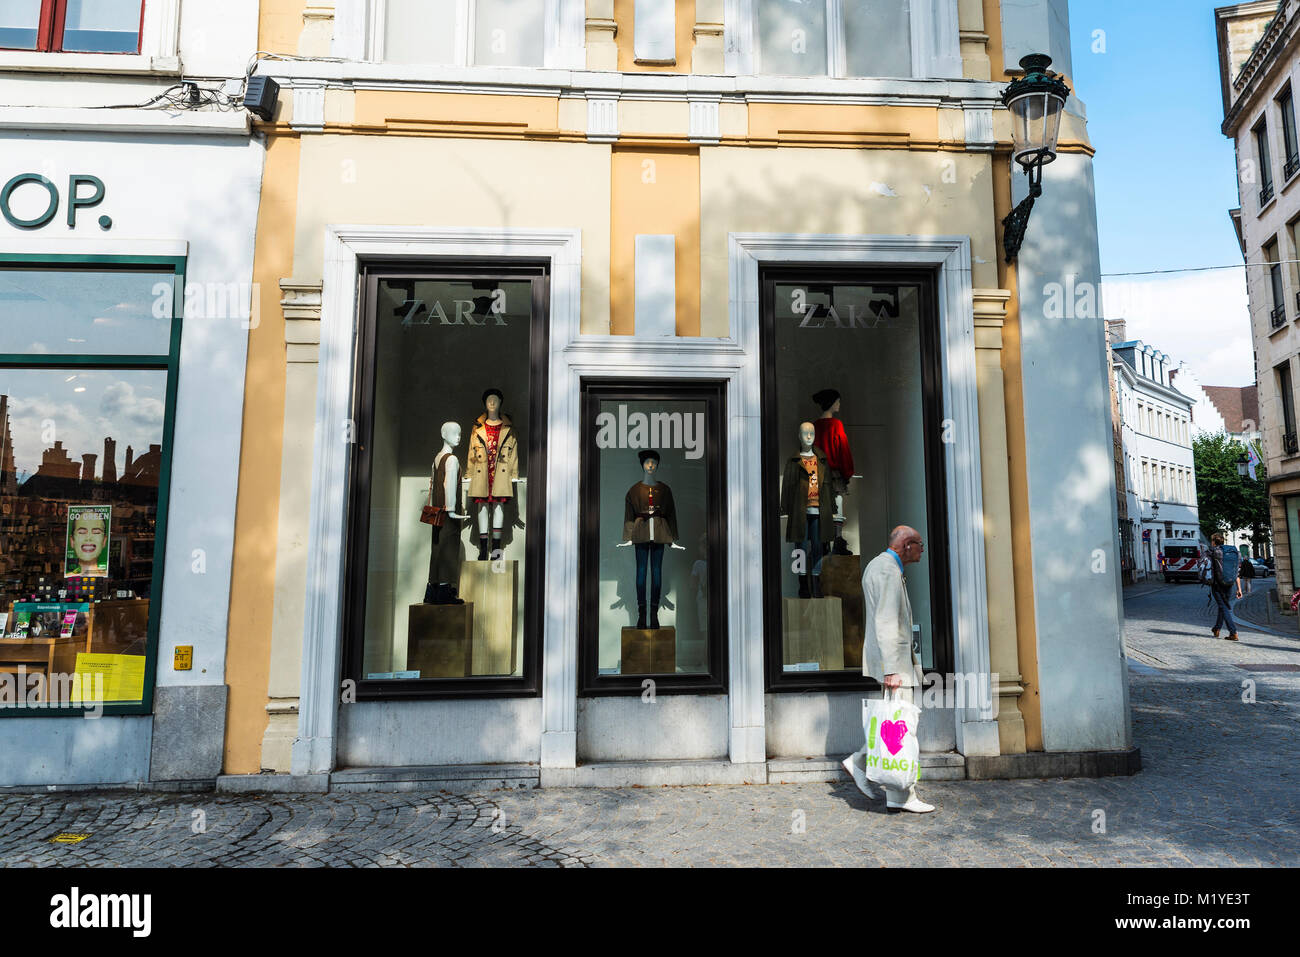 Bruges, Belgique - 1 septembre 2017 : Vieil homme en costume blanc marchant devant une boutique Zara pour les enfants dans la ville médiévale de Bruges, Belgique Banque D'Images